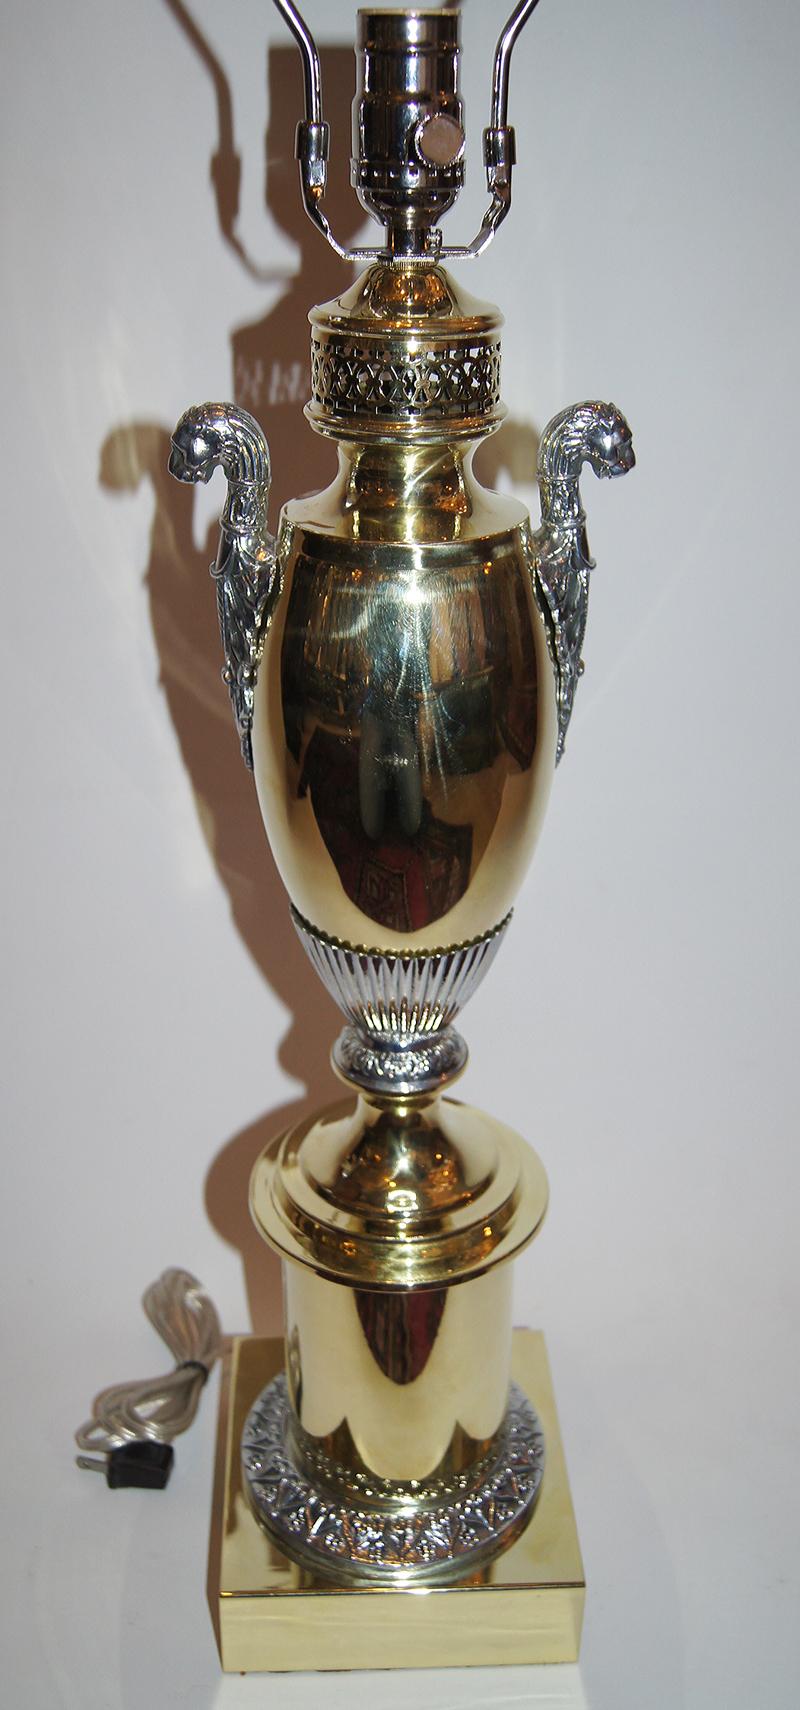 Paire de lampes de table Empire des années 1920, en vermeil et argent, avec des détails de têtes de lion.

Mesures :
Hauteur du corps : 22